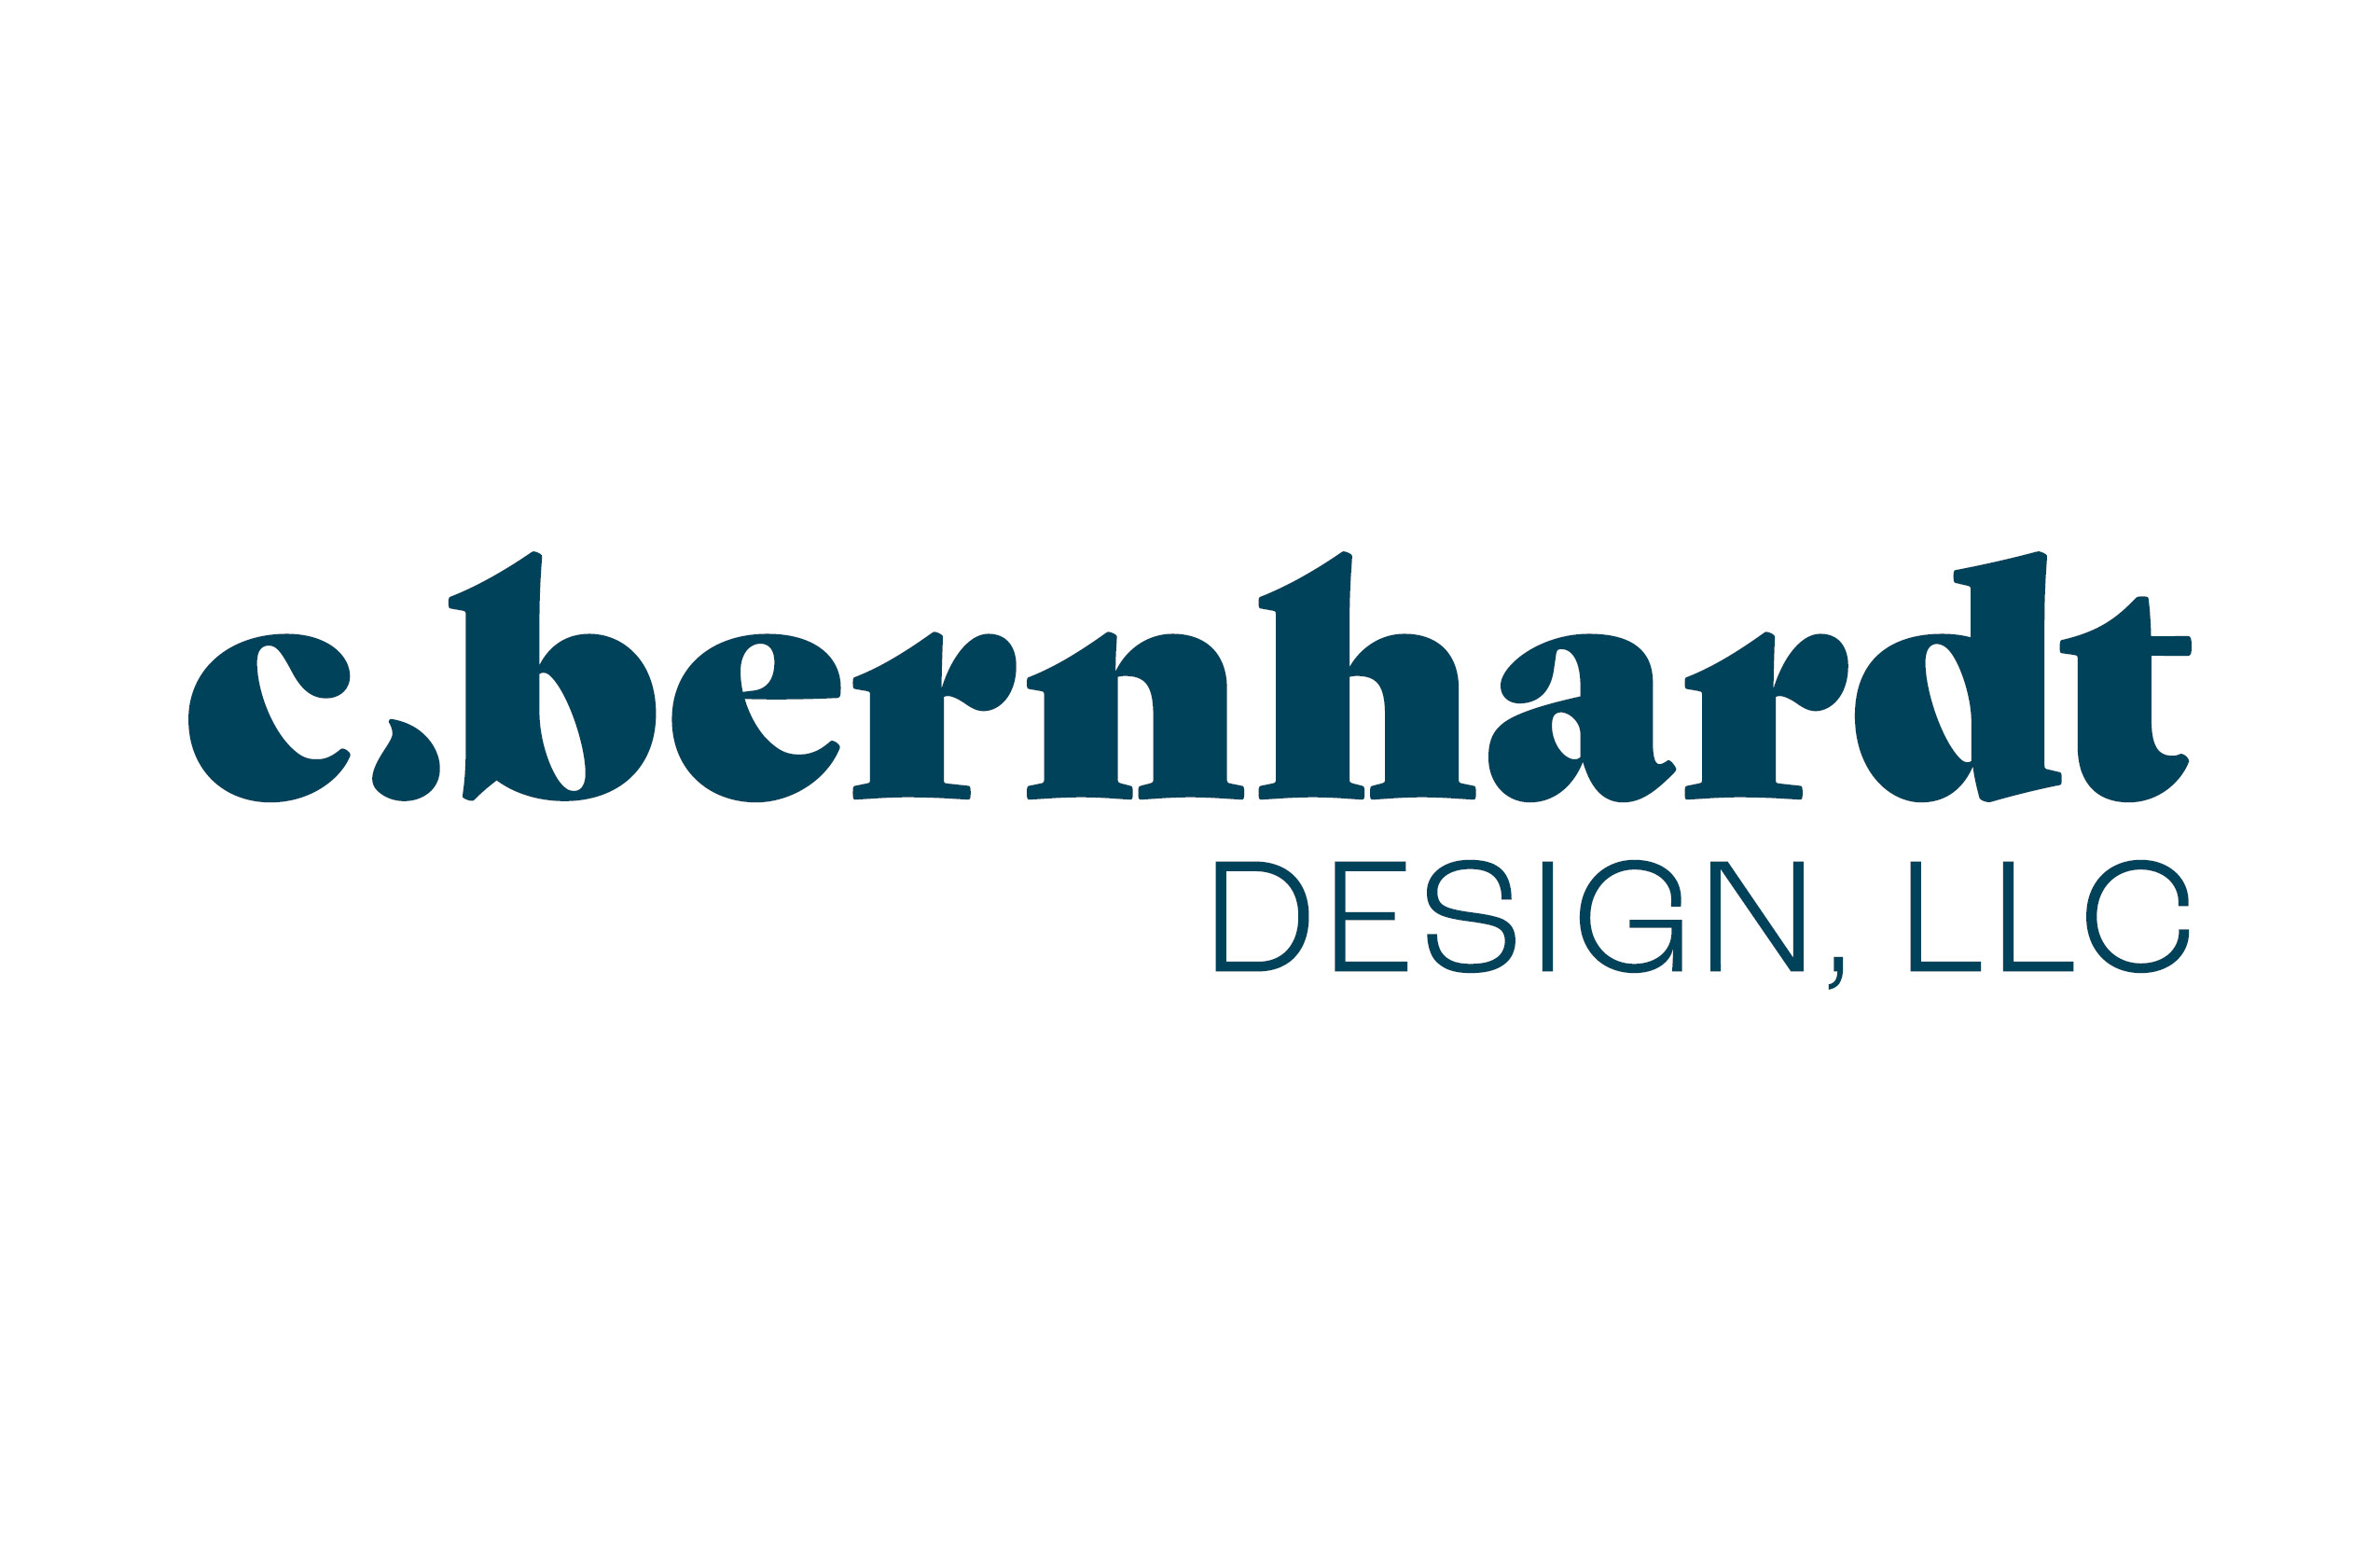 Image of C.bernhardt design, LLC logo